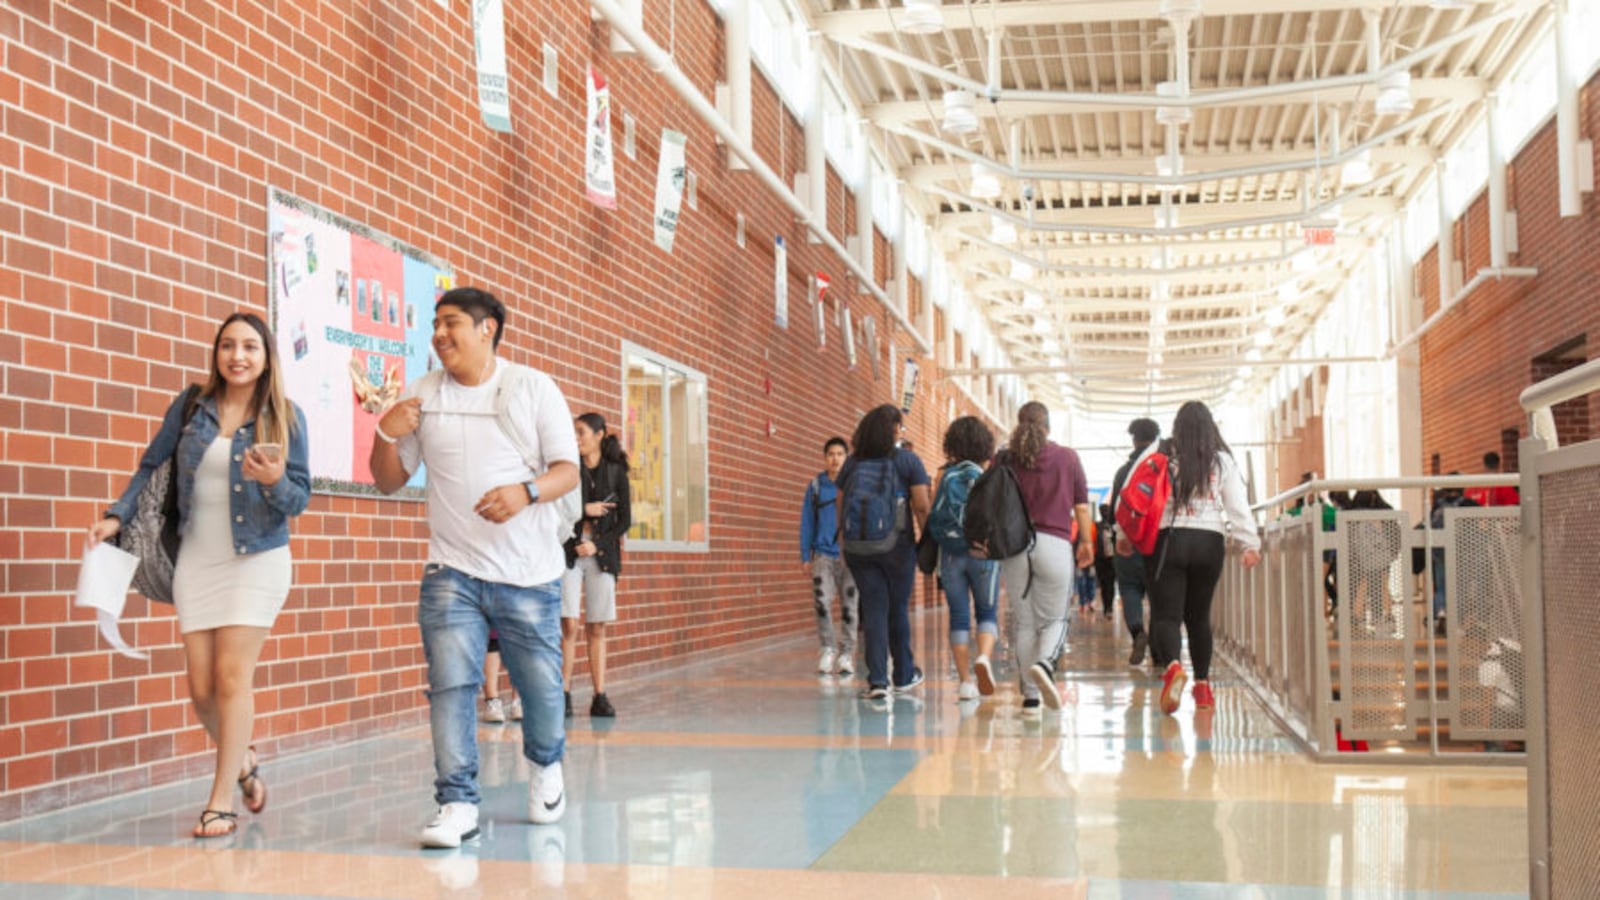 Students walk through a school hallway.